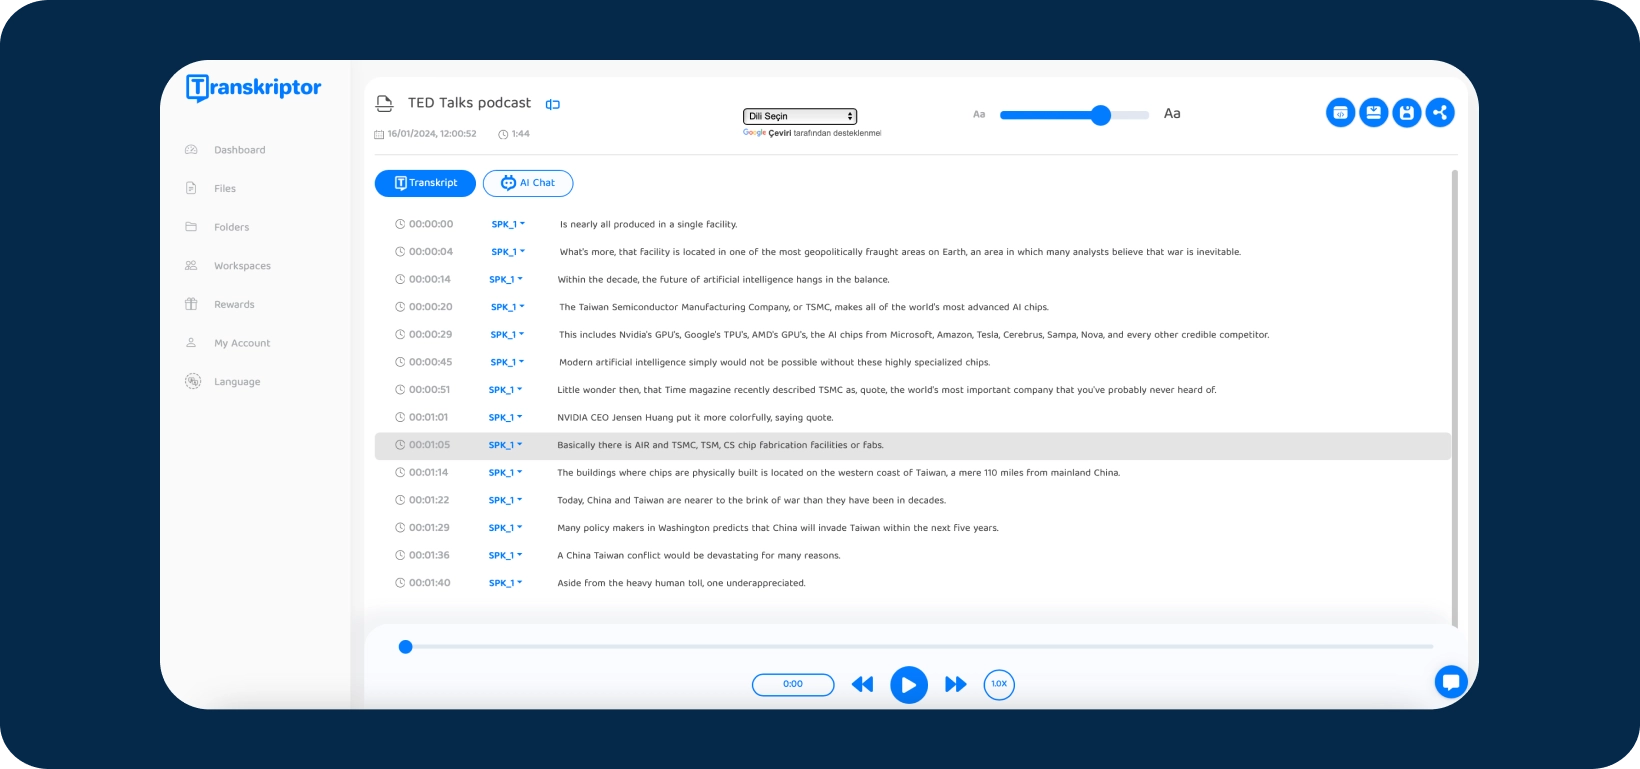 Petikan skrin antara muka aplikasi Transkriptor menunjukkan podcast TED Talks ditranskripsikan.